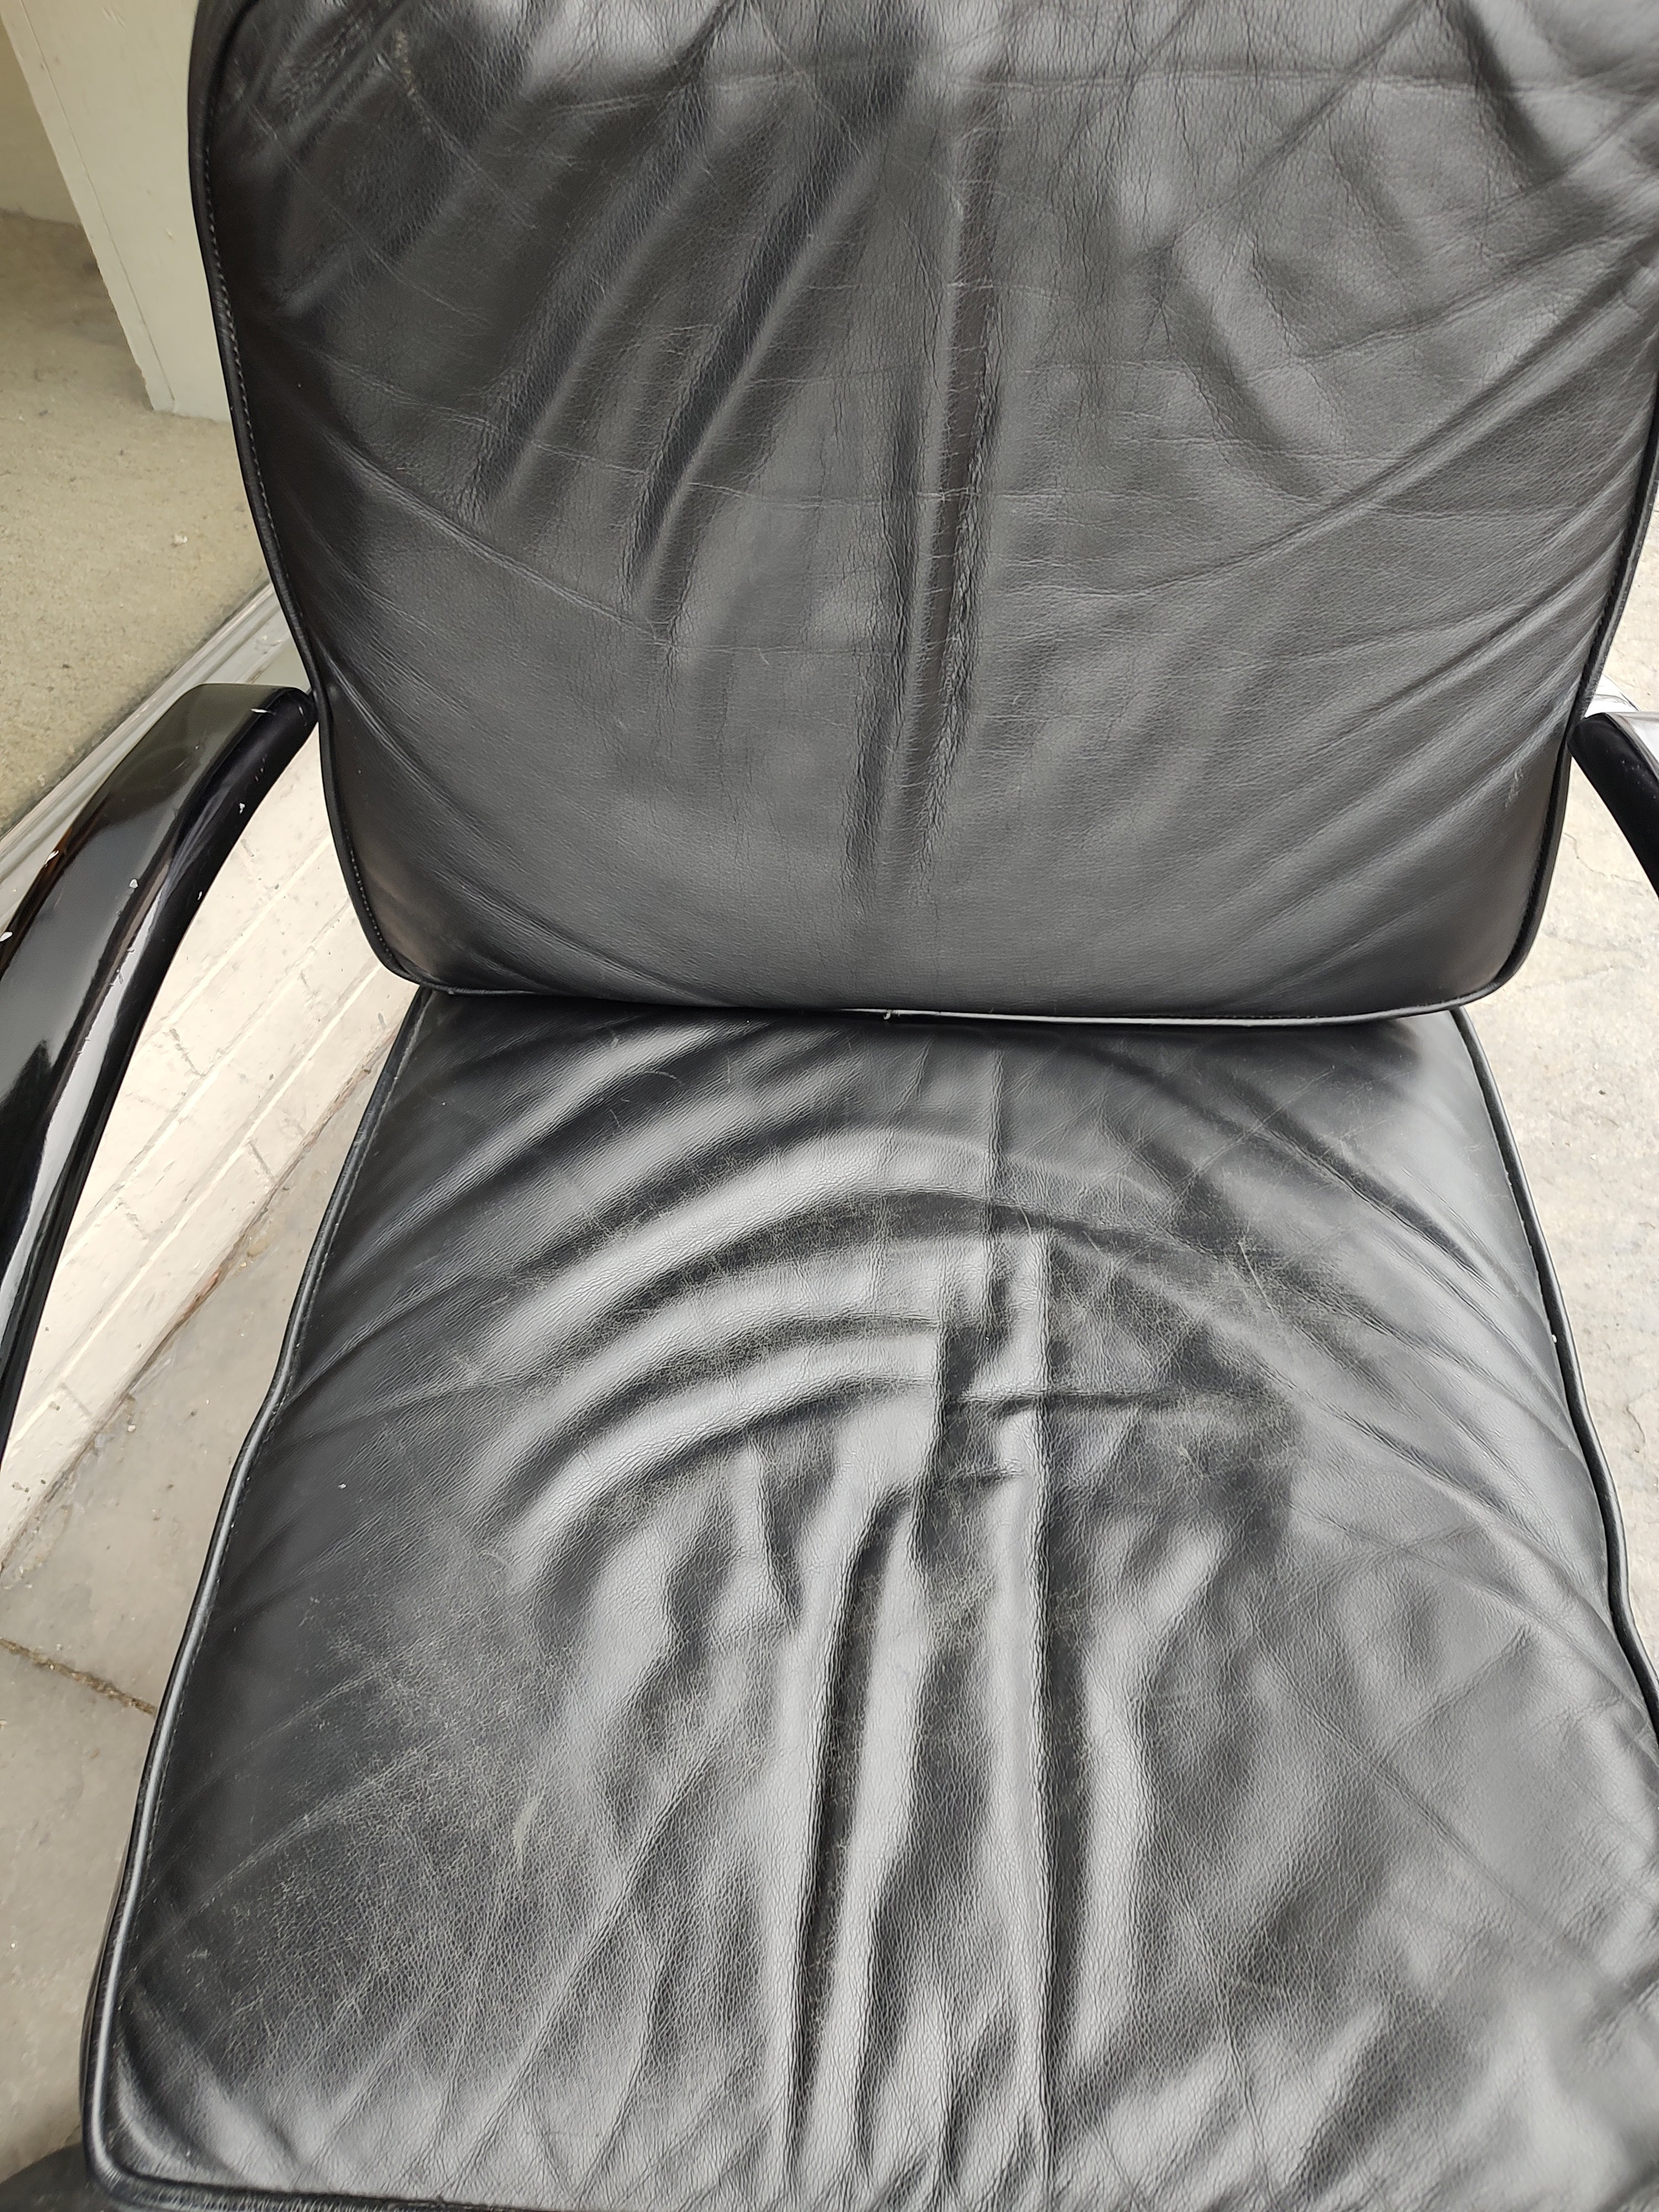 Magnifique chaise longue à ressort chromé de Kem Weber pour Lloyd furniture. En excellent état vintage avec une usure minimale. Les coussins en cuir présentent quelques plis mais pas de fissures ni de déchirures. Le chrome est excellent.